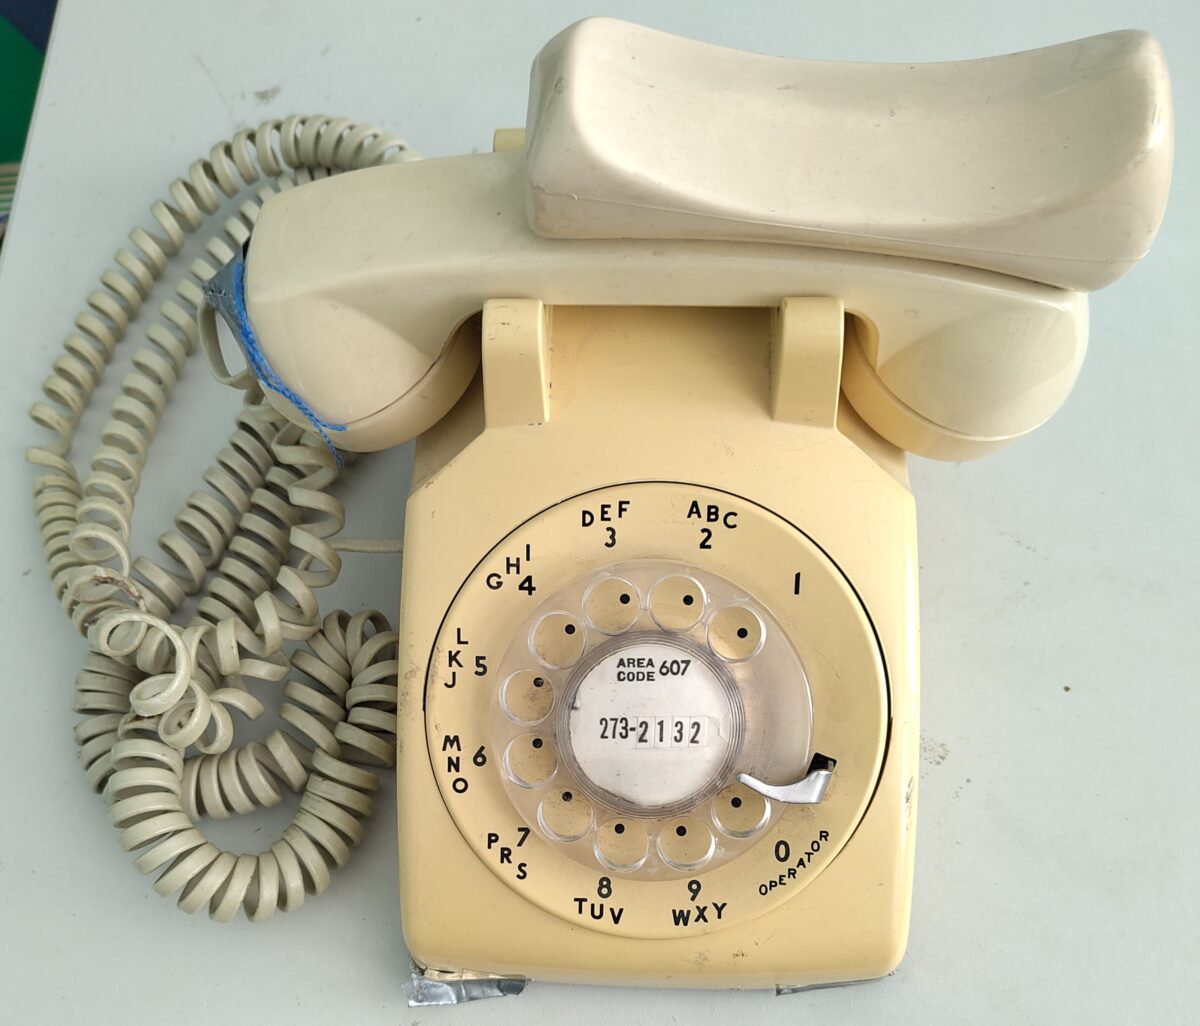 AT&T phone, circa 1975.